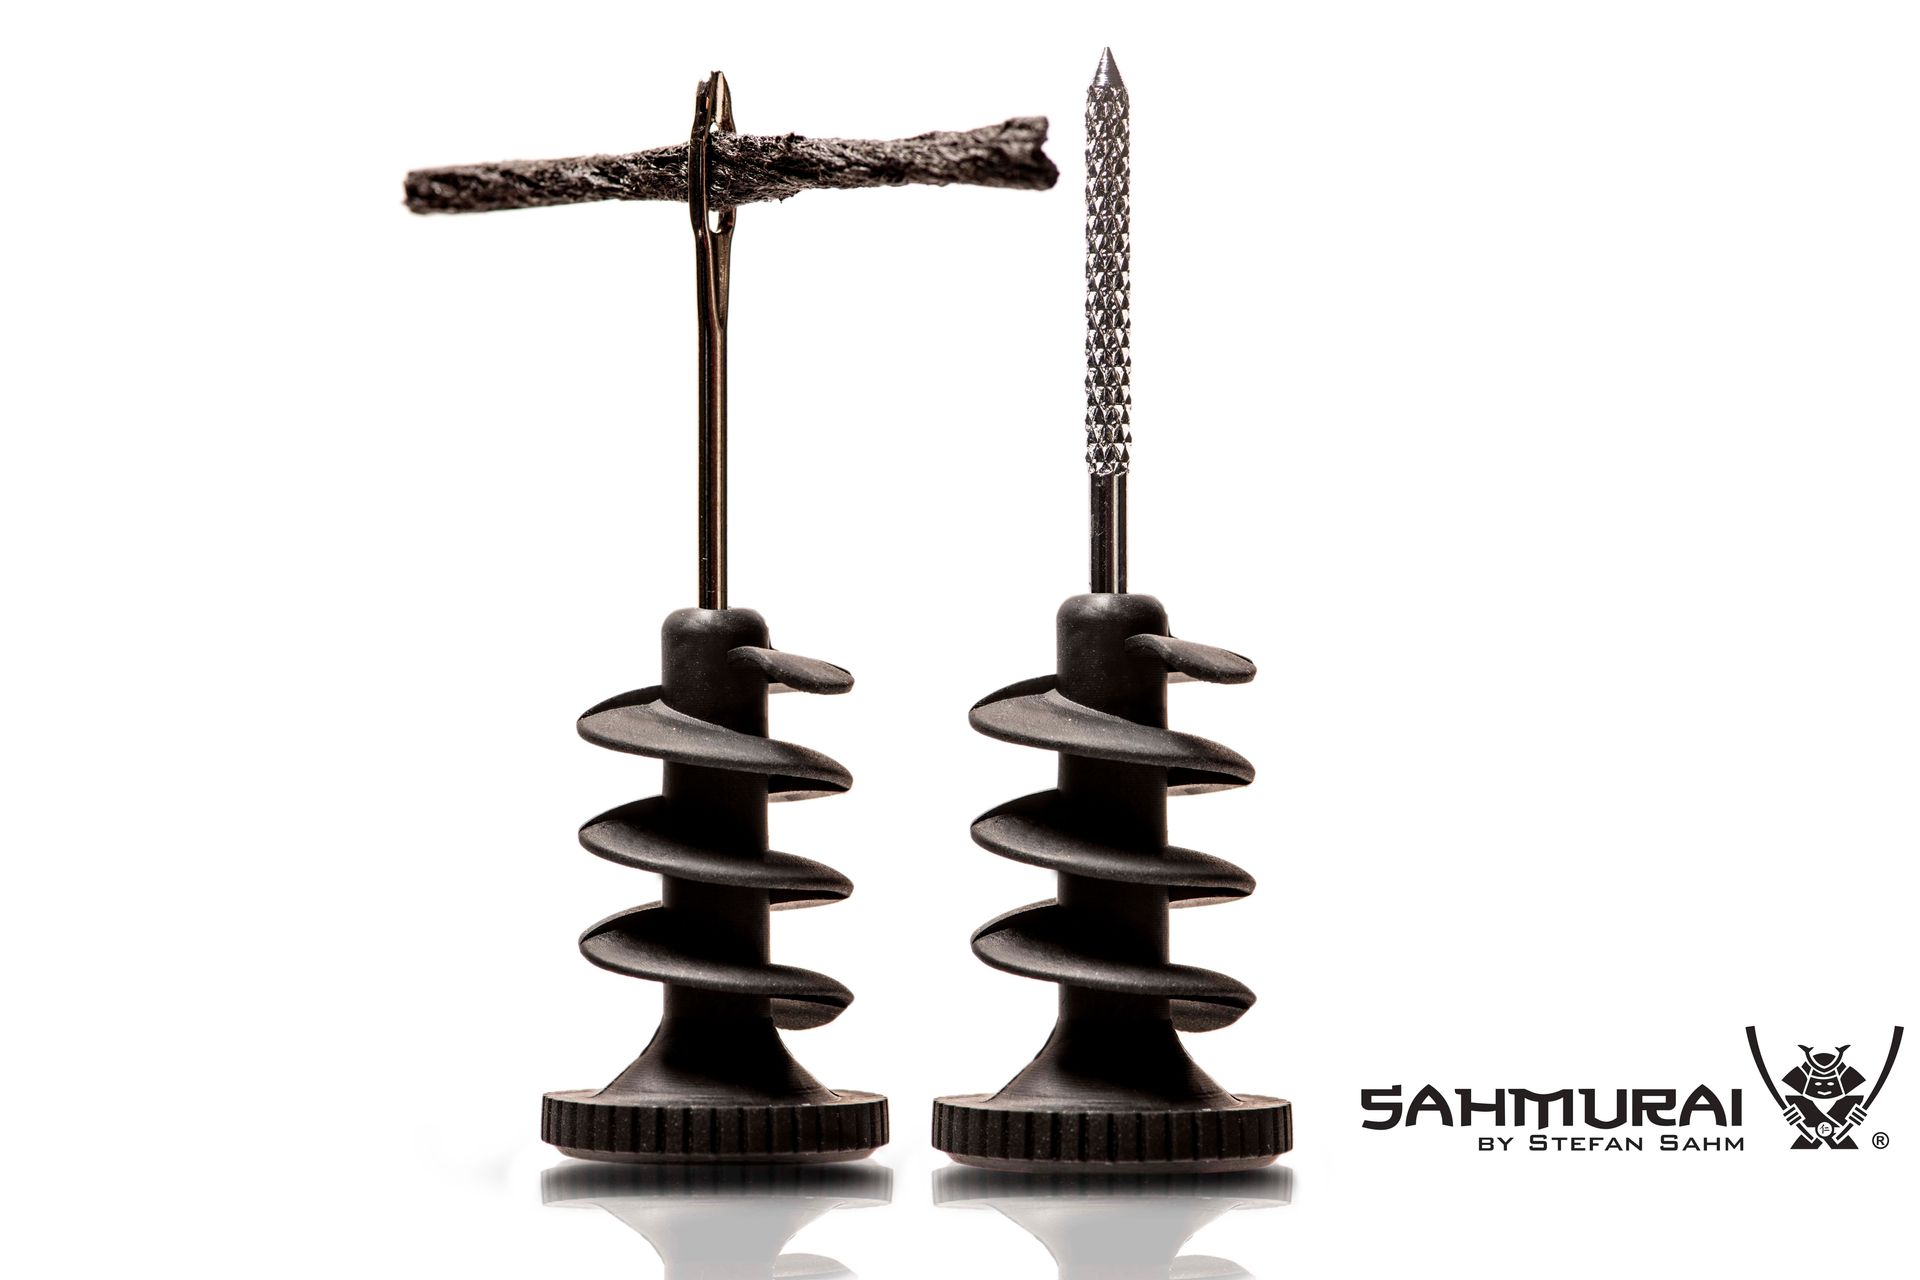 Sahmurai Sword, Reparatur Set für Tubeless Reifen